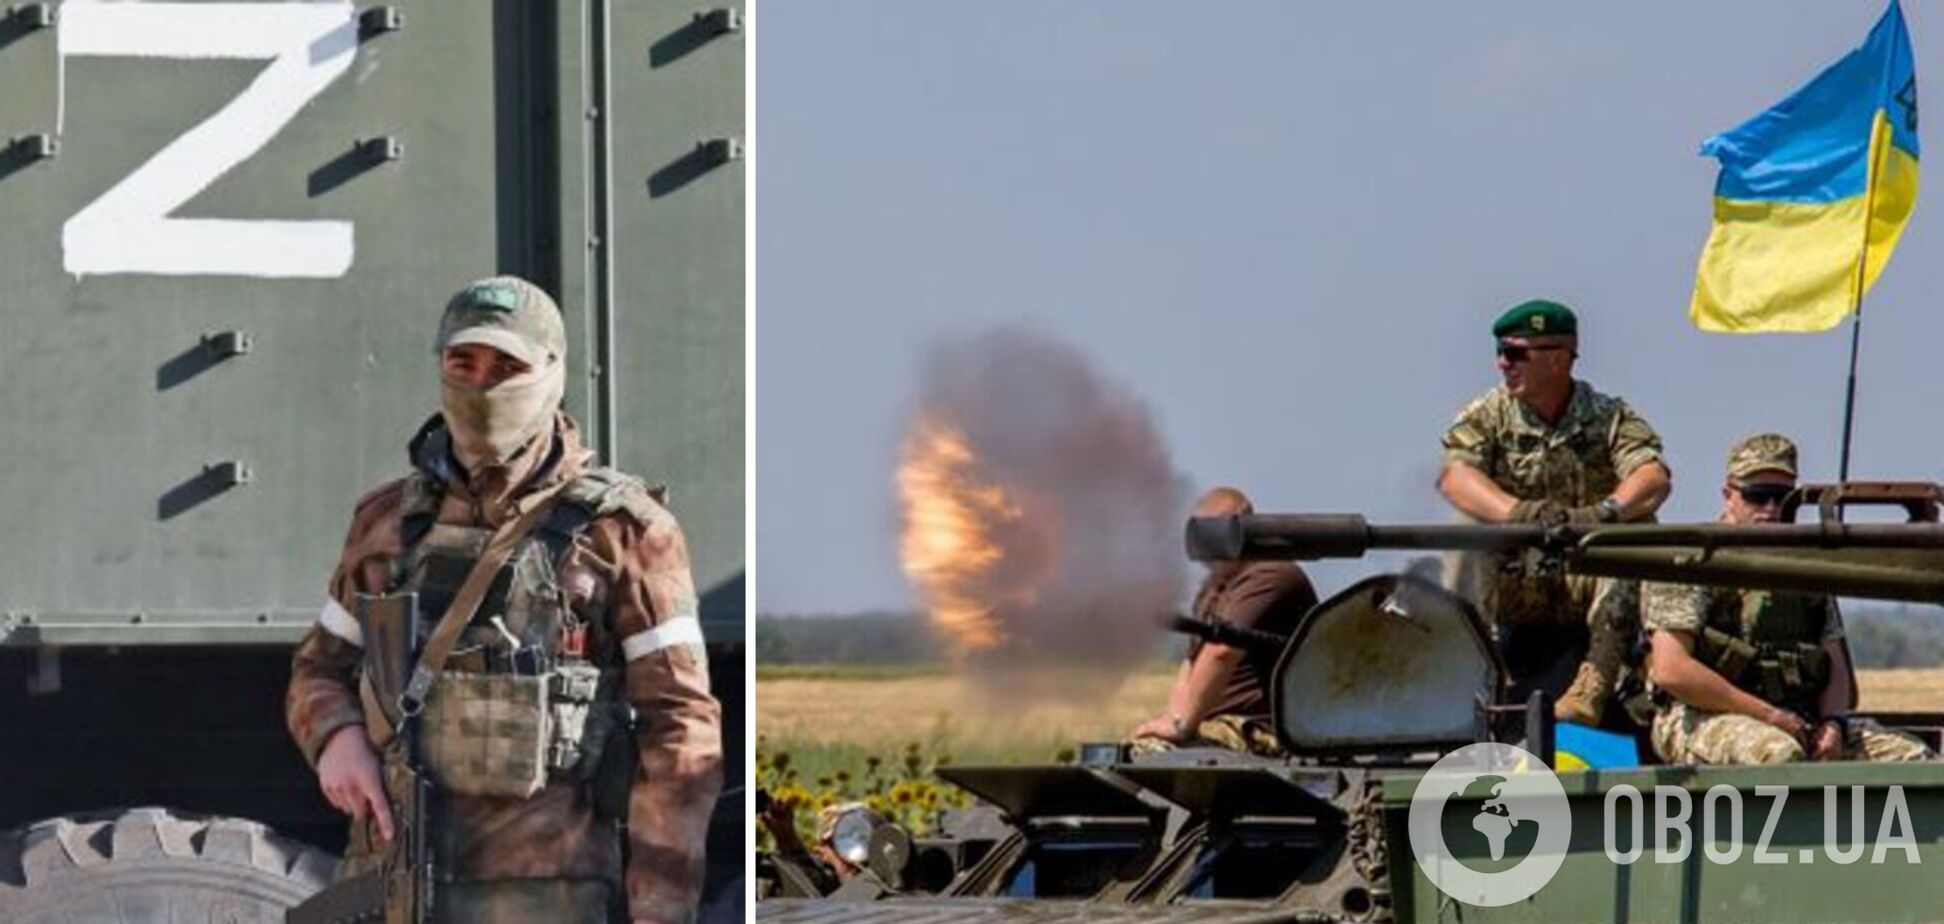 'Всі проти Росії': окупанти засмучені військовою допомогою Заходу Україні та скаржаться на своє забезпечення. Аудіо